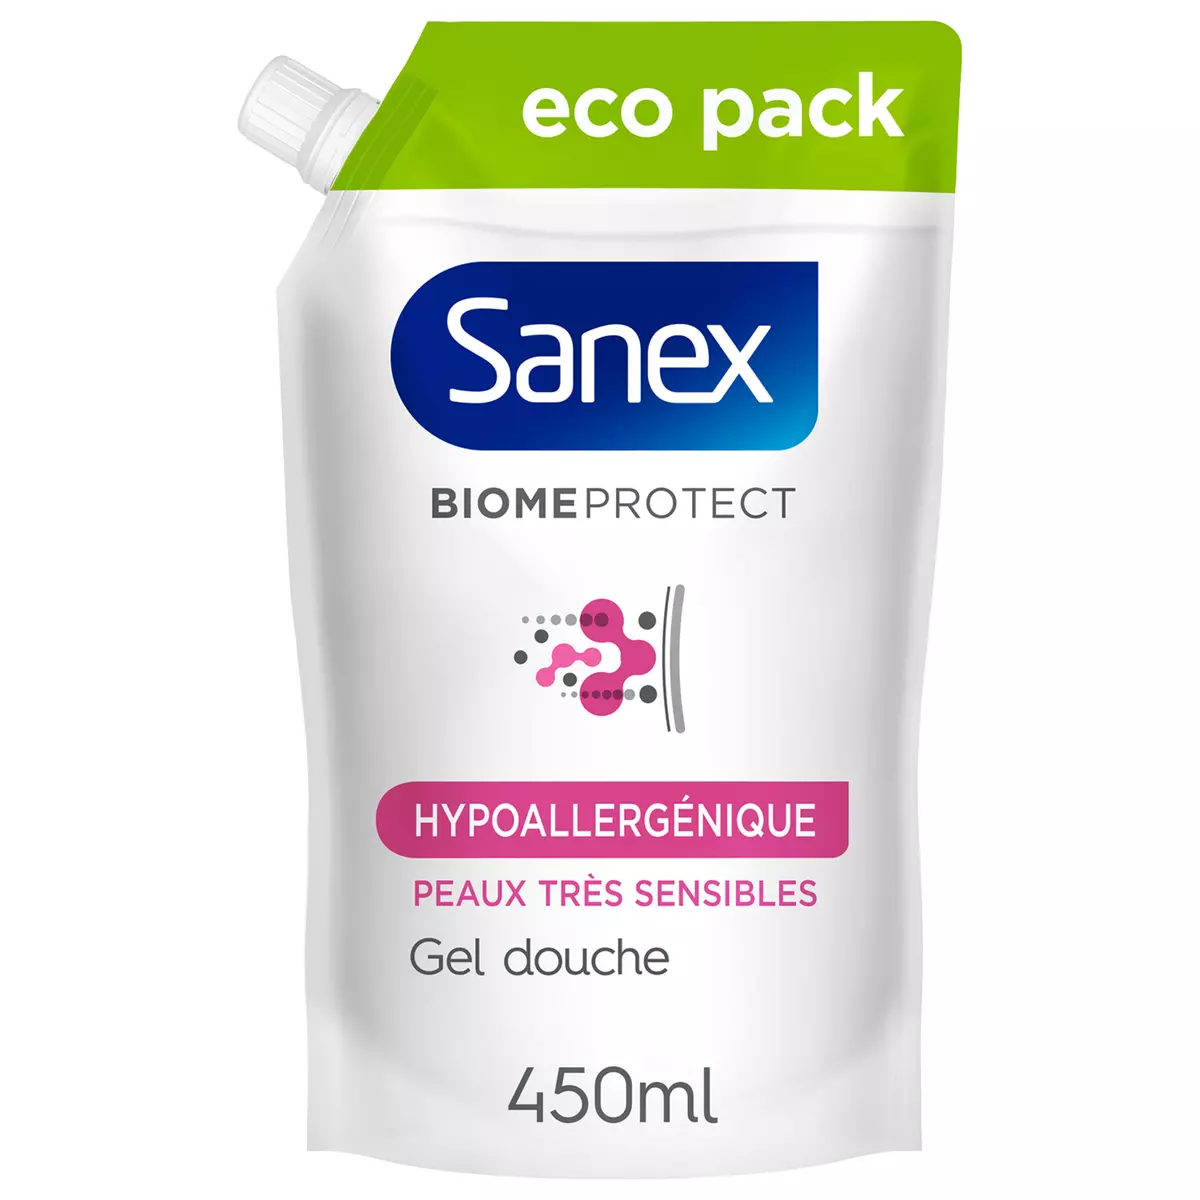 SANEX Recharge gel douche biome protect dermo hypoallergénique peaux très  sensibles 450ml pas cher 